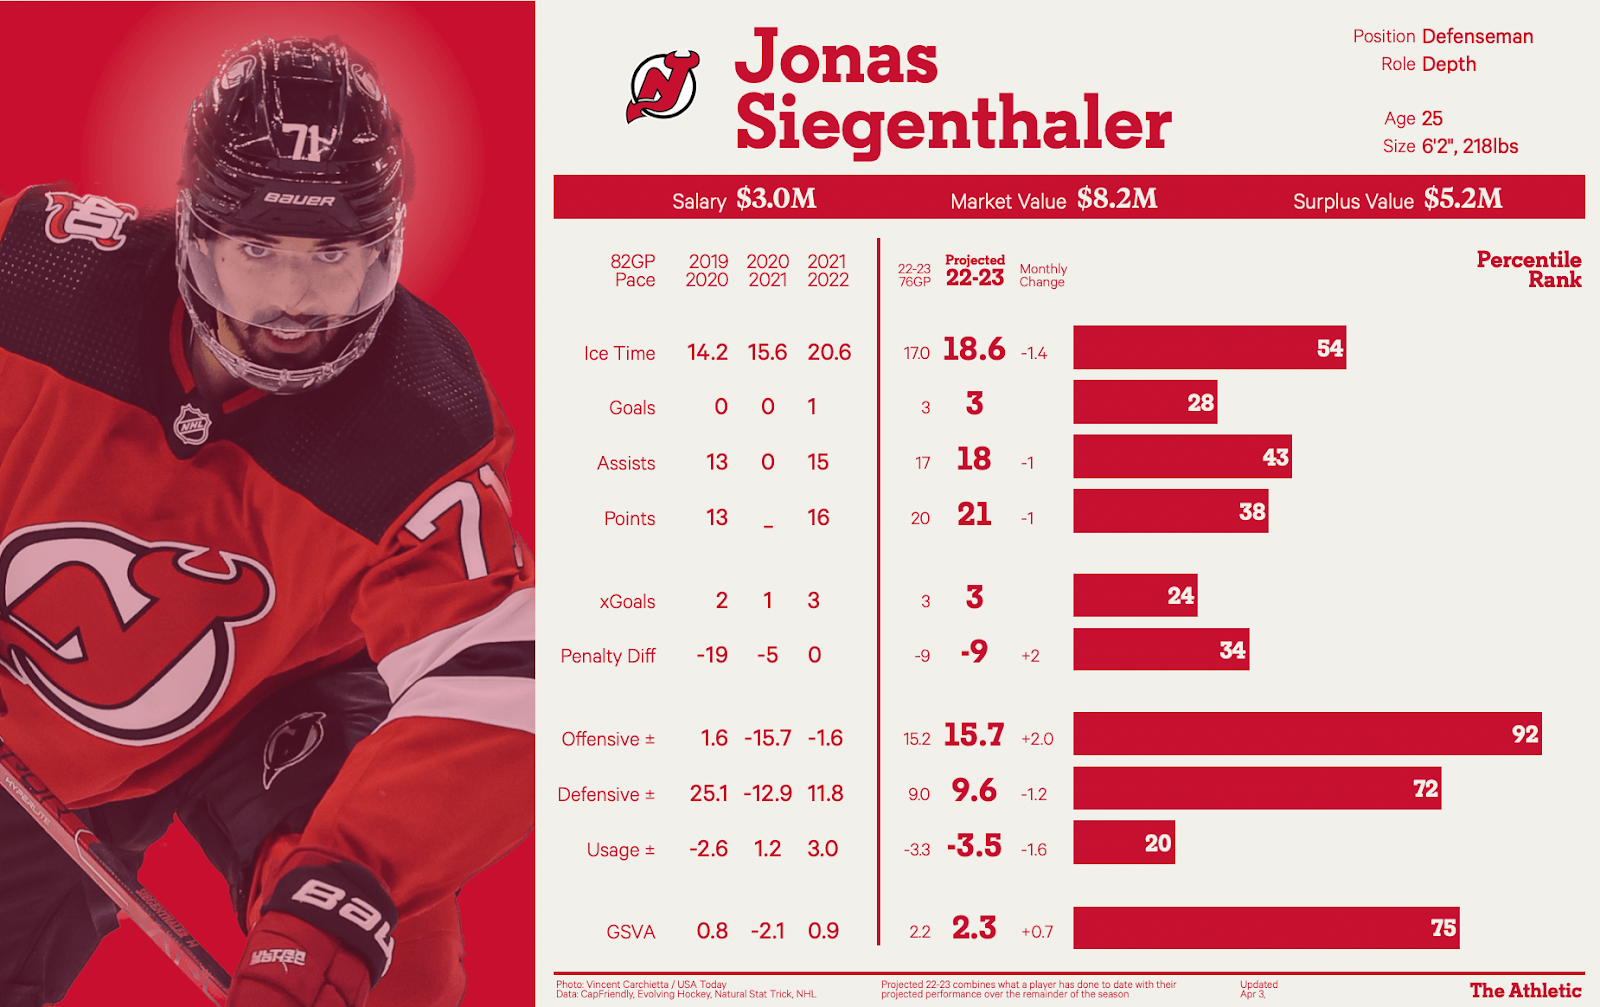 Devils re-sign defenseman Jonas Siegenthaler to 2-year deal